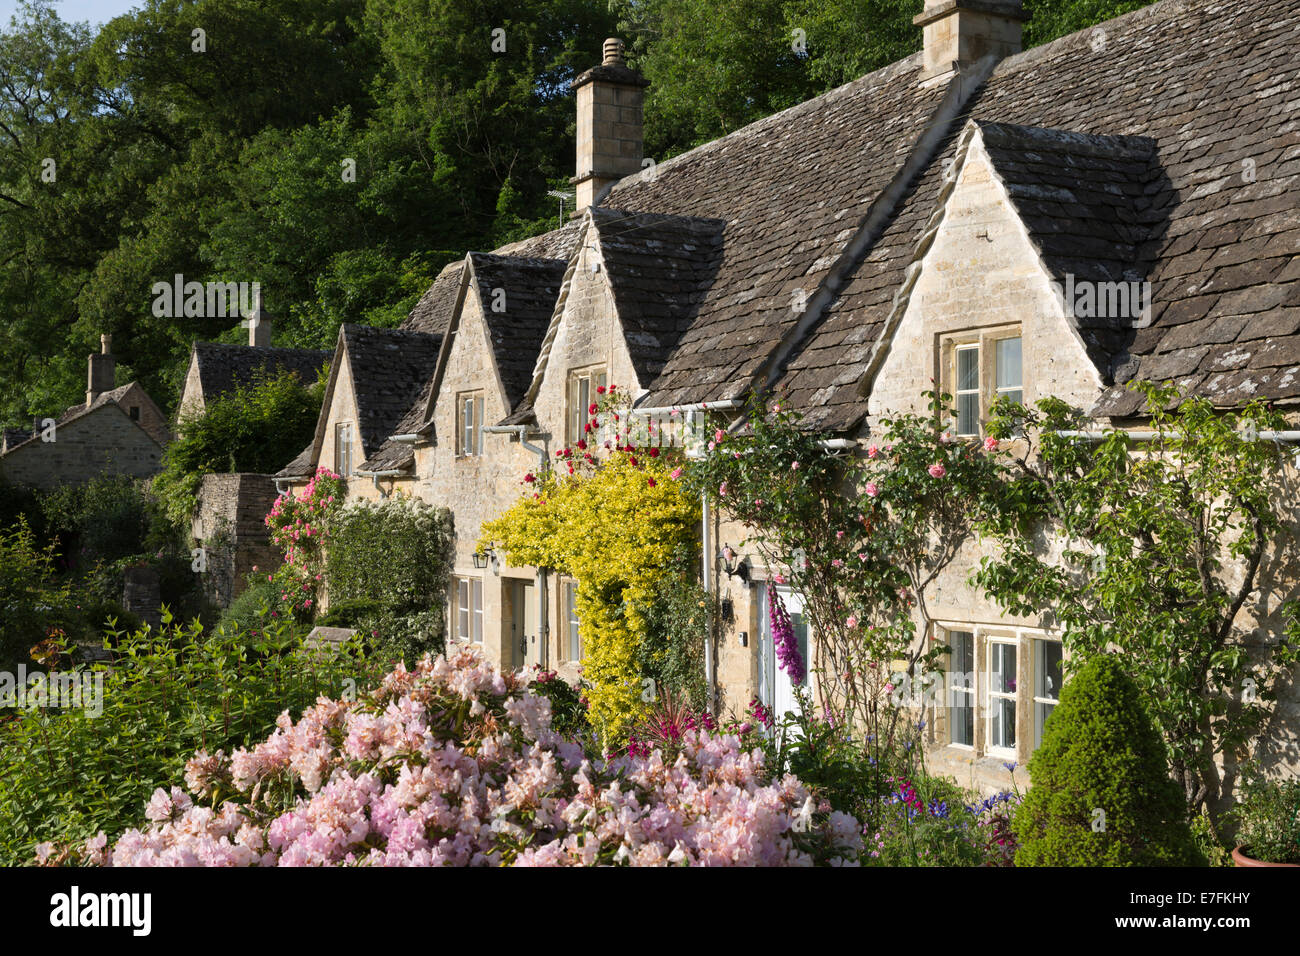 Cotswold cottages et jardin d'été, Bibury, Cotswolds, Gloucestershire, Angleterre, Royaume-Uni, Europe Banque D'Images